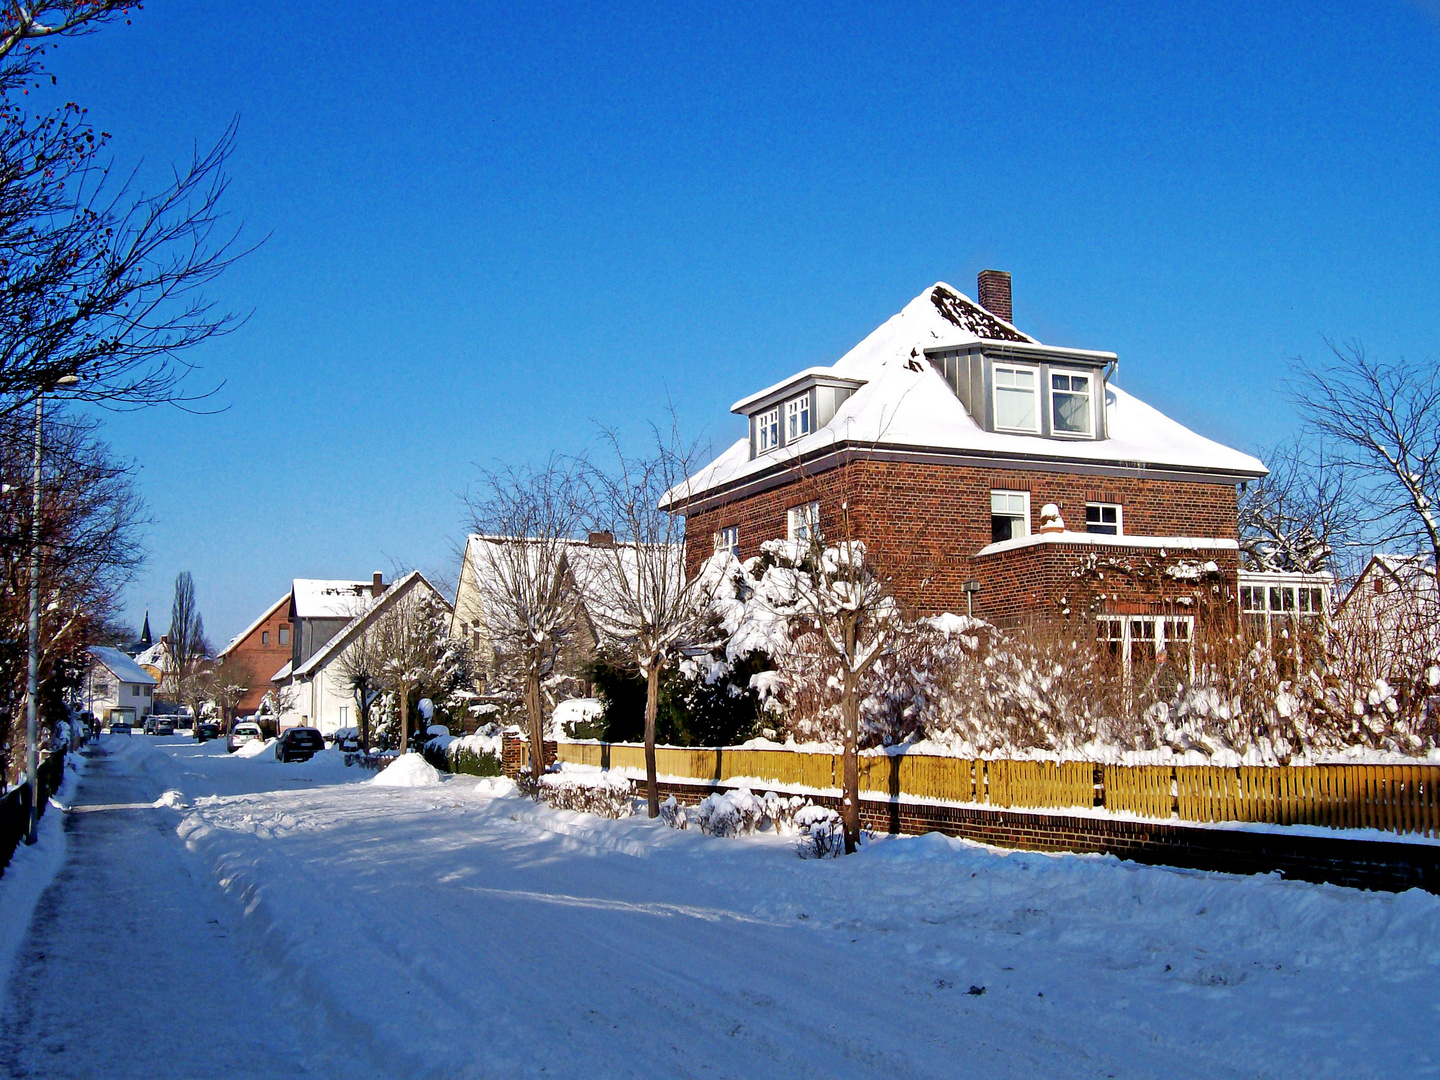 Strasse-Lehrte im Winter 2010